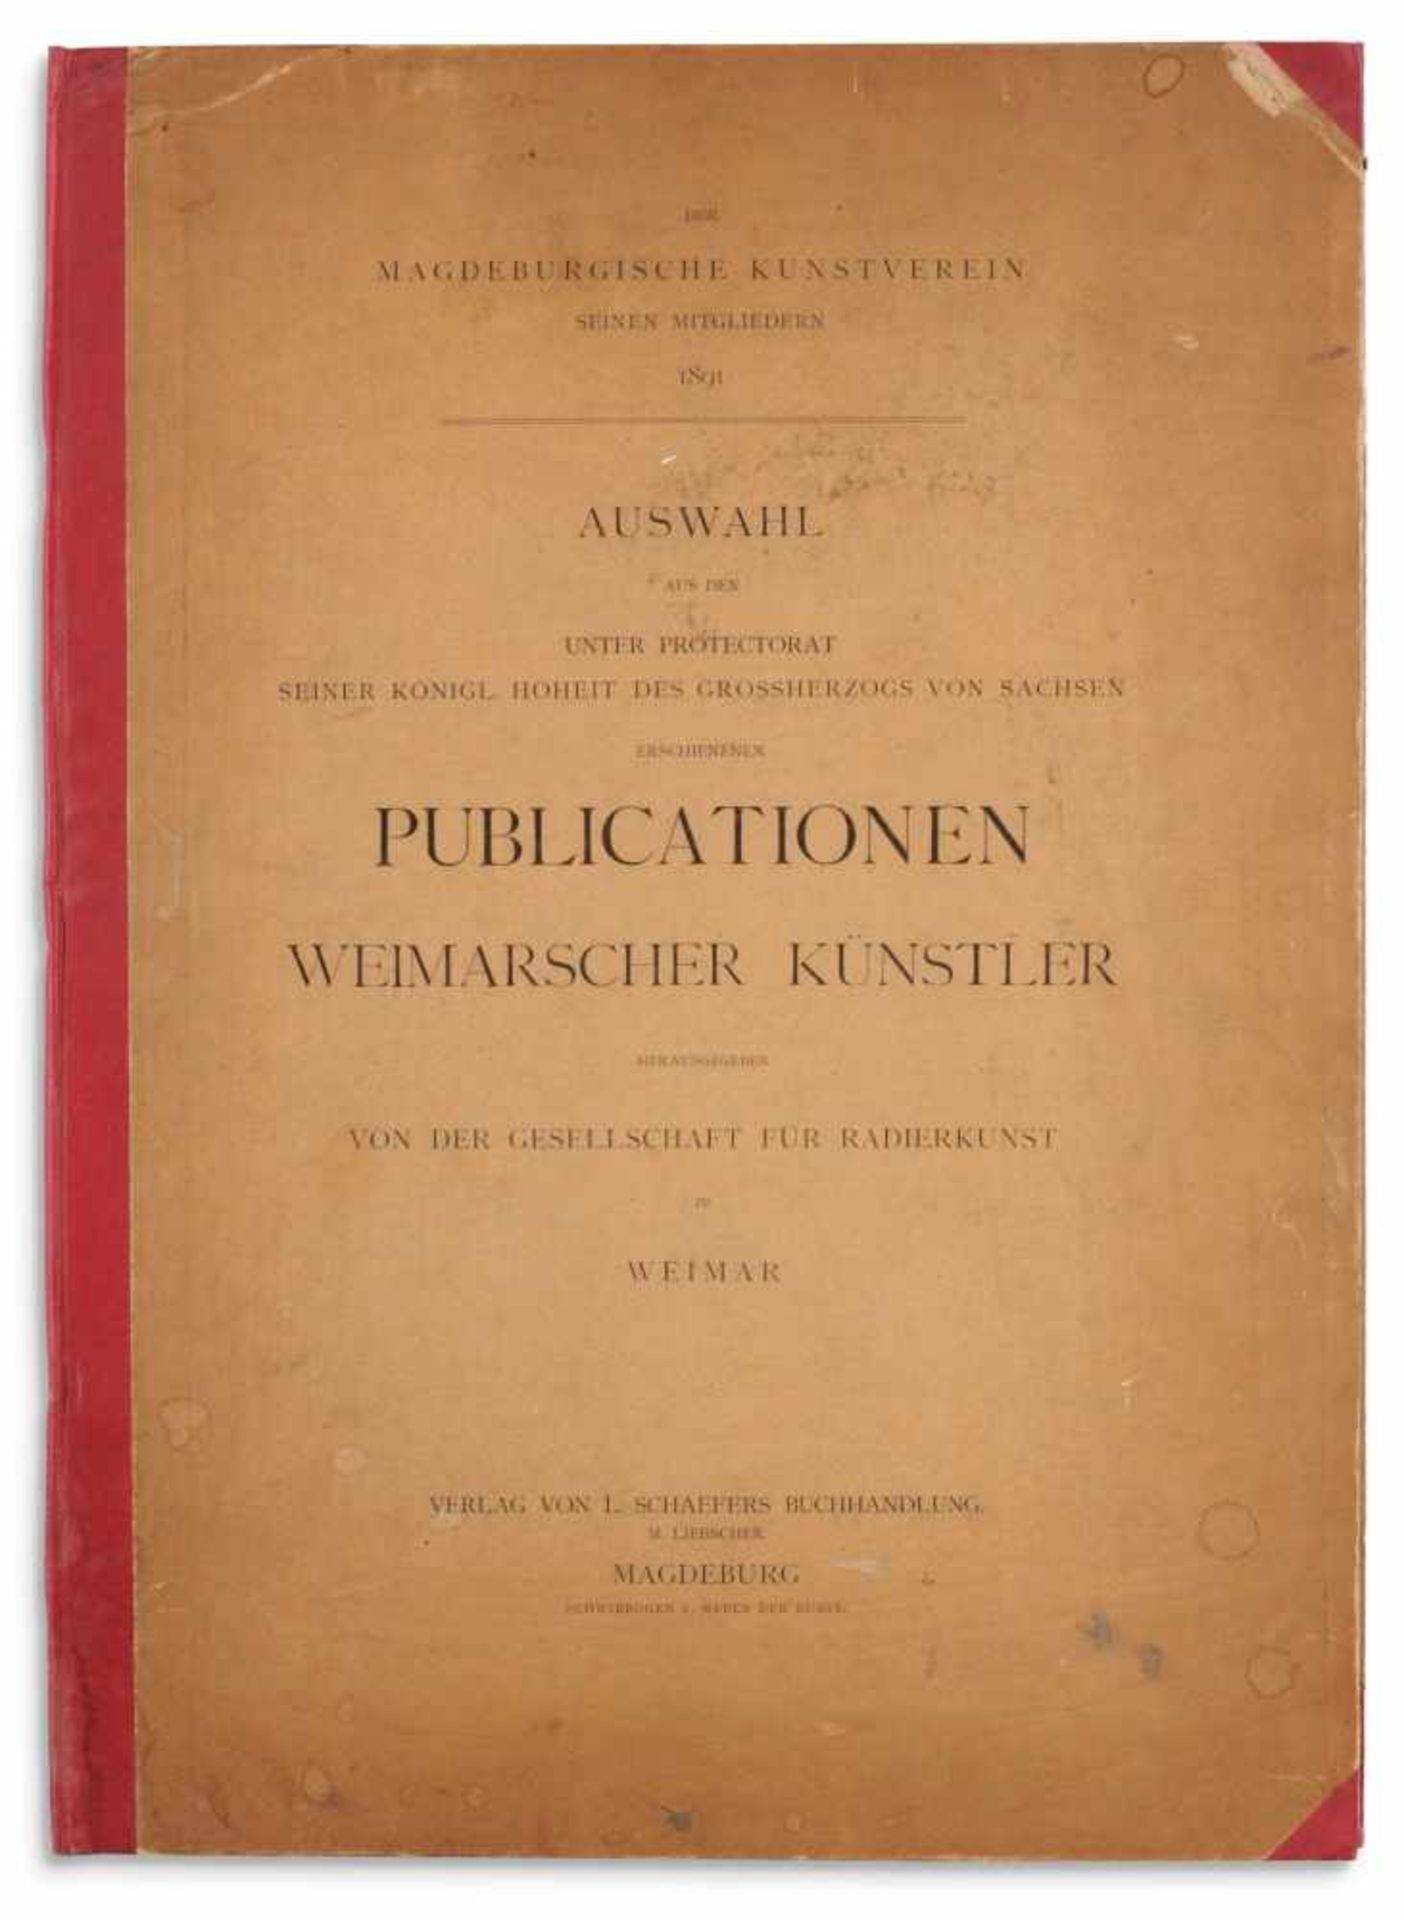 Karl Buchholz und andere Künstler: Der Magdeburgische Kunstverein seinen Mitgliedern 1891. Auswahl - Image 10 of 10